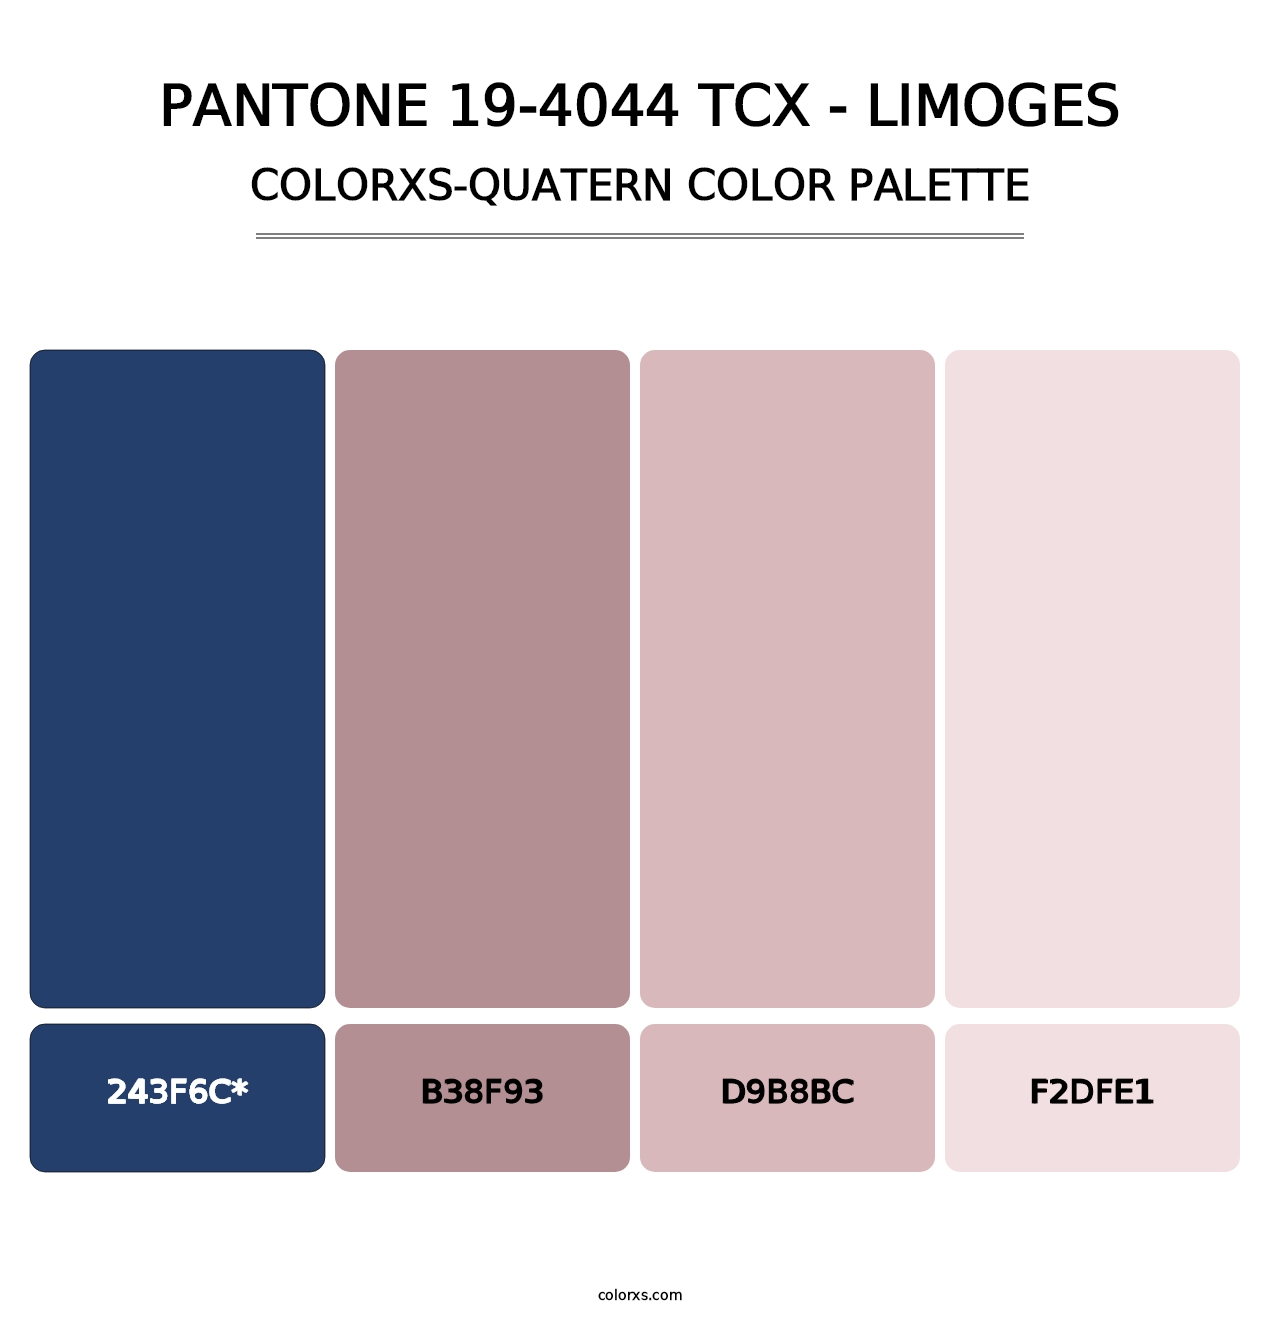 PANTONE 19-4044 TCX - Limoges - Colorxs Quatern Palette